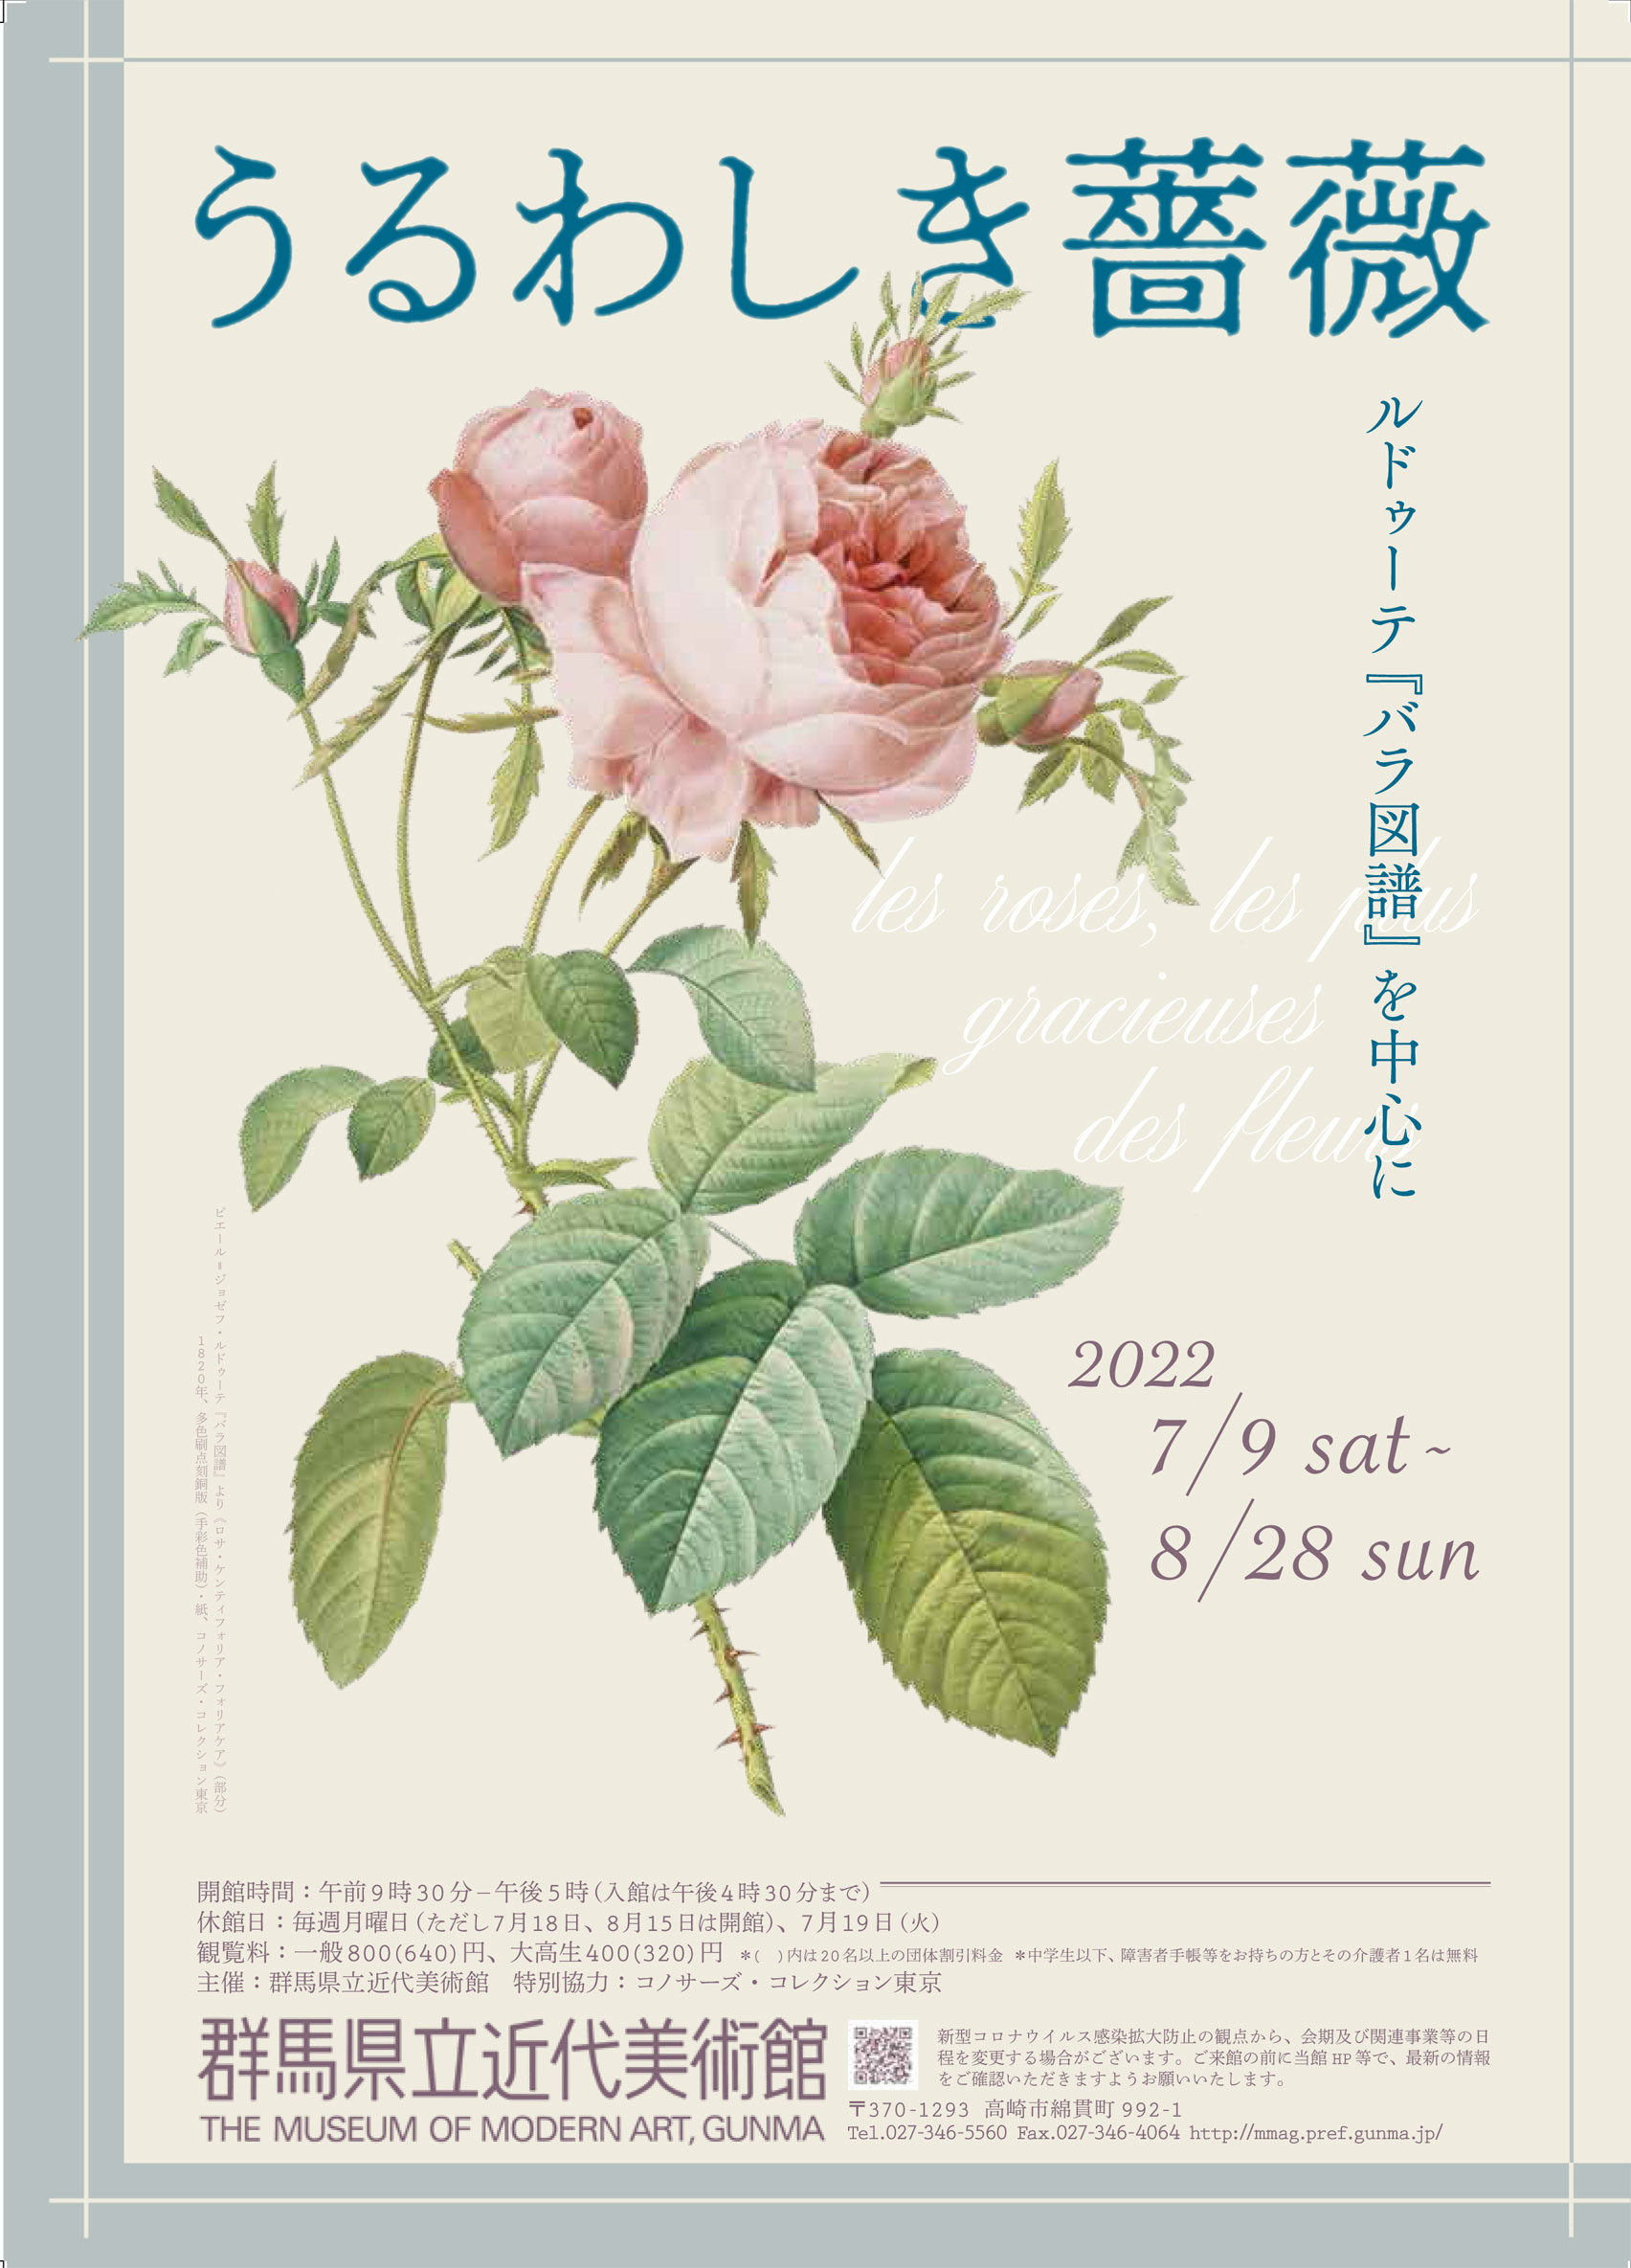 うるわしき薔薇—ルドゥーテ『バラ図譜』を中心に - 群馬県立近代美術館